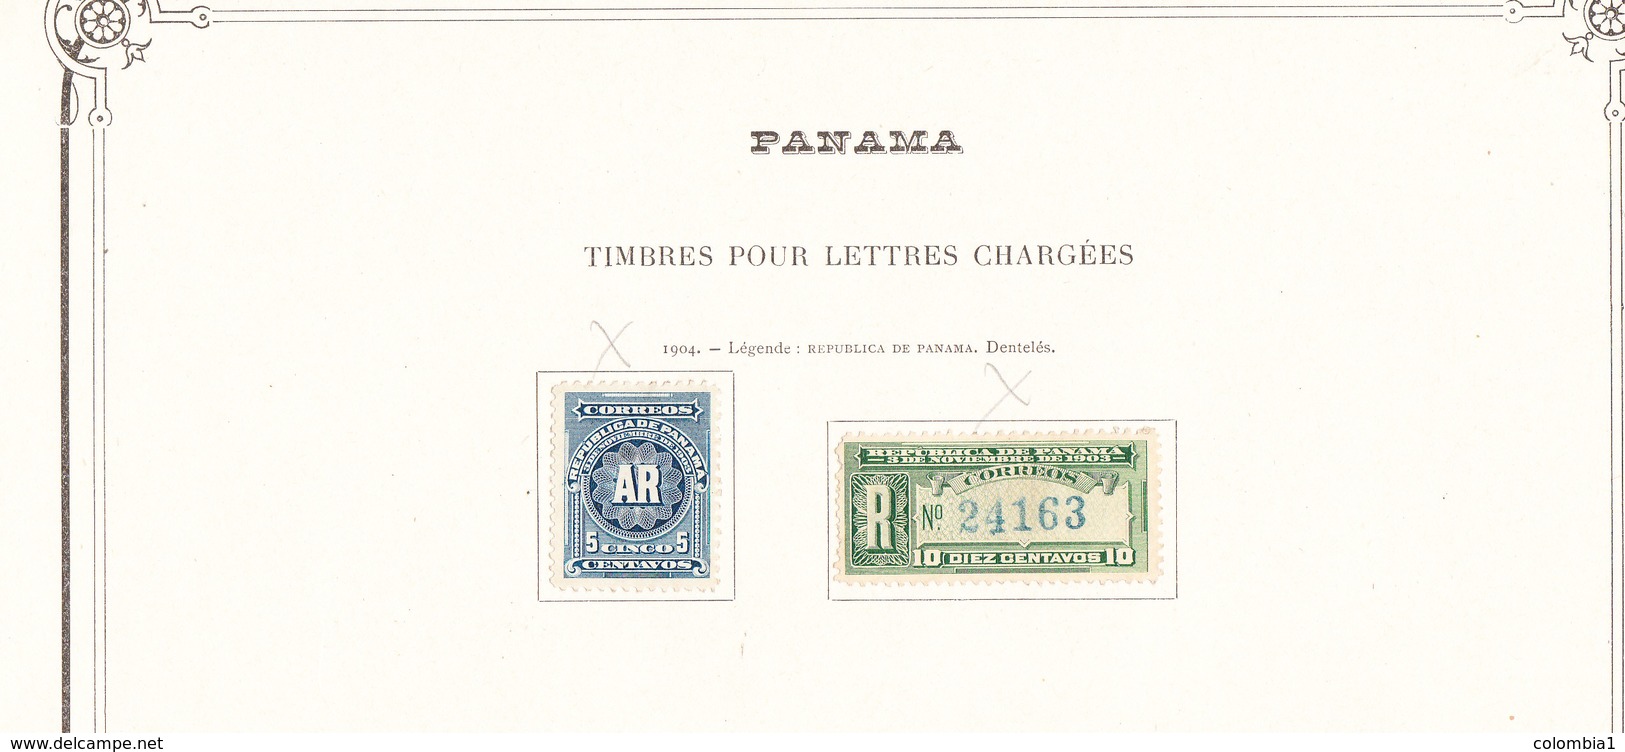 PANAMA TIMBRES POUR LETTRES CHARGEES  RARE Timbres 1904 .sur Feuille D Album - Panama